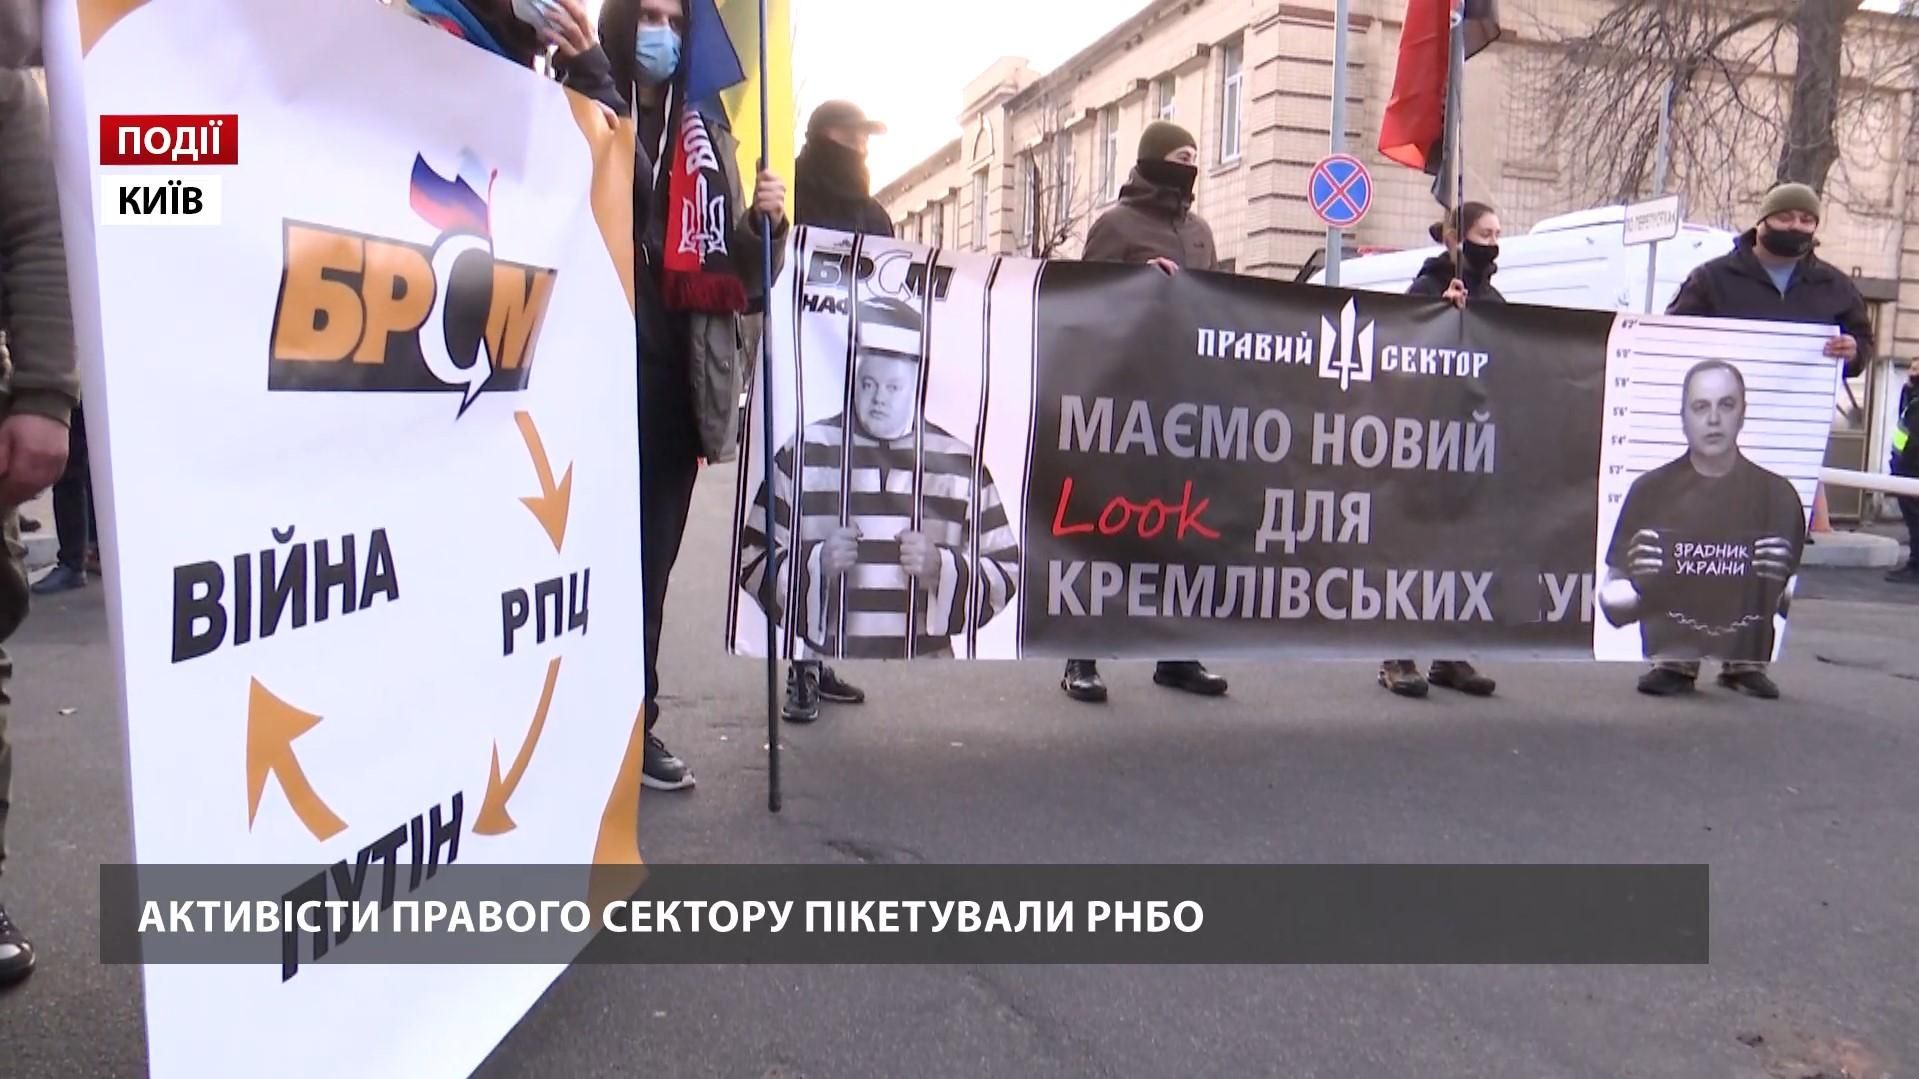 Активісти "Правого сектору" вимагають РНБО внести московських агентів до санкційного списку - Україна новини - 24 Канал